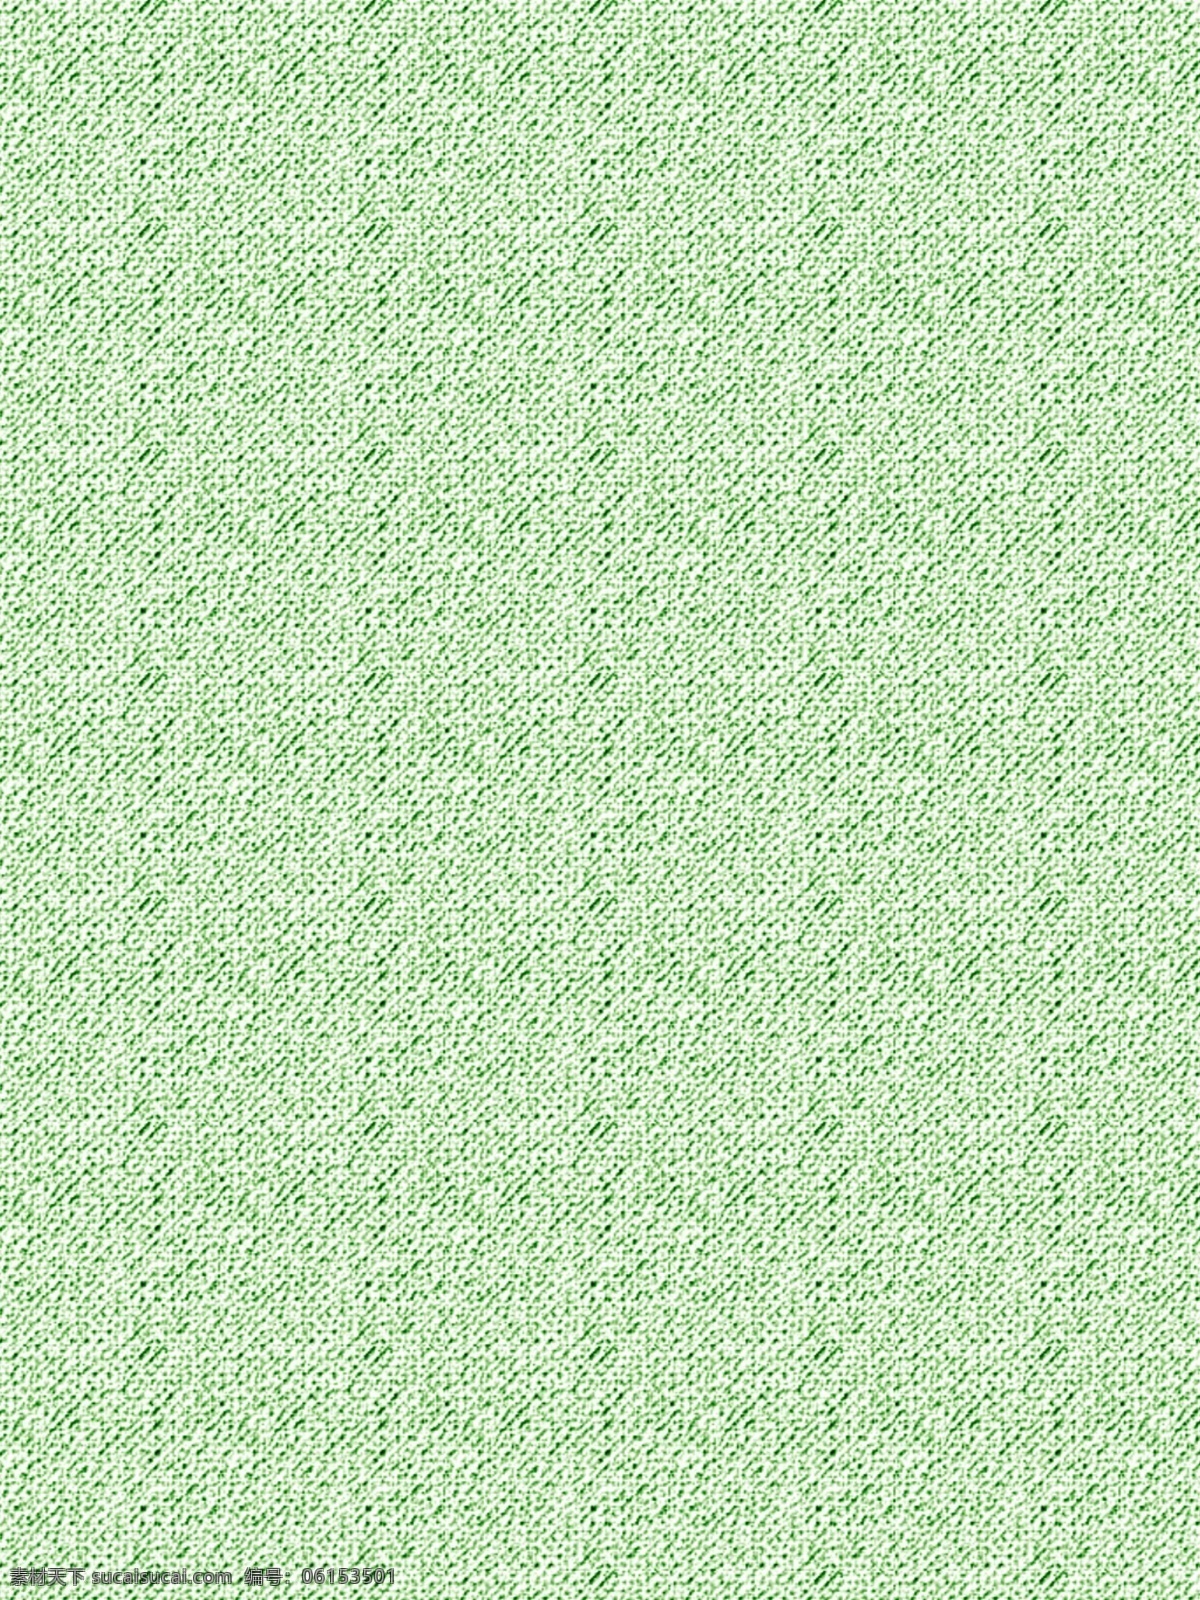 森 系 棉麻 布料 背景 森系背景 浅绿色背景 棉麻质感 布料材质背景 简约背景